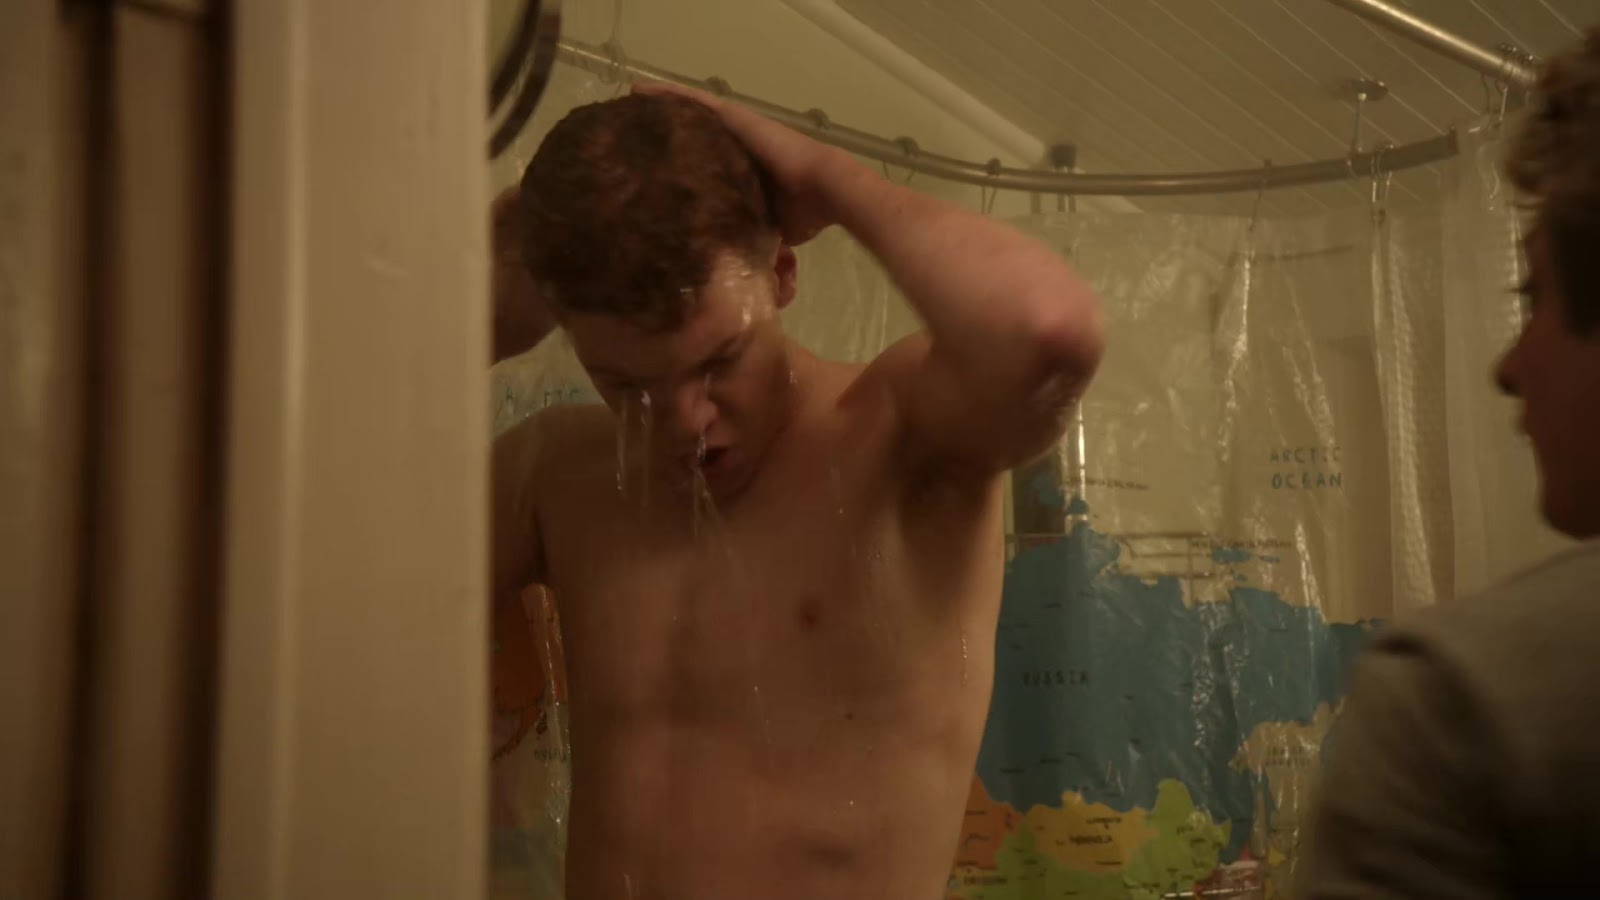 Cameron Monaghan shirtless in Shameless 2-01 "Summertime" .